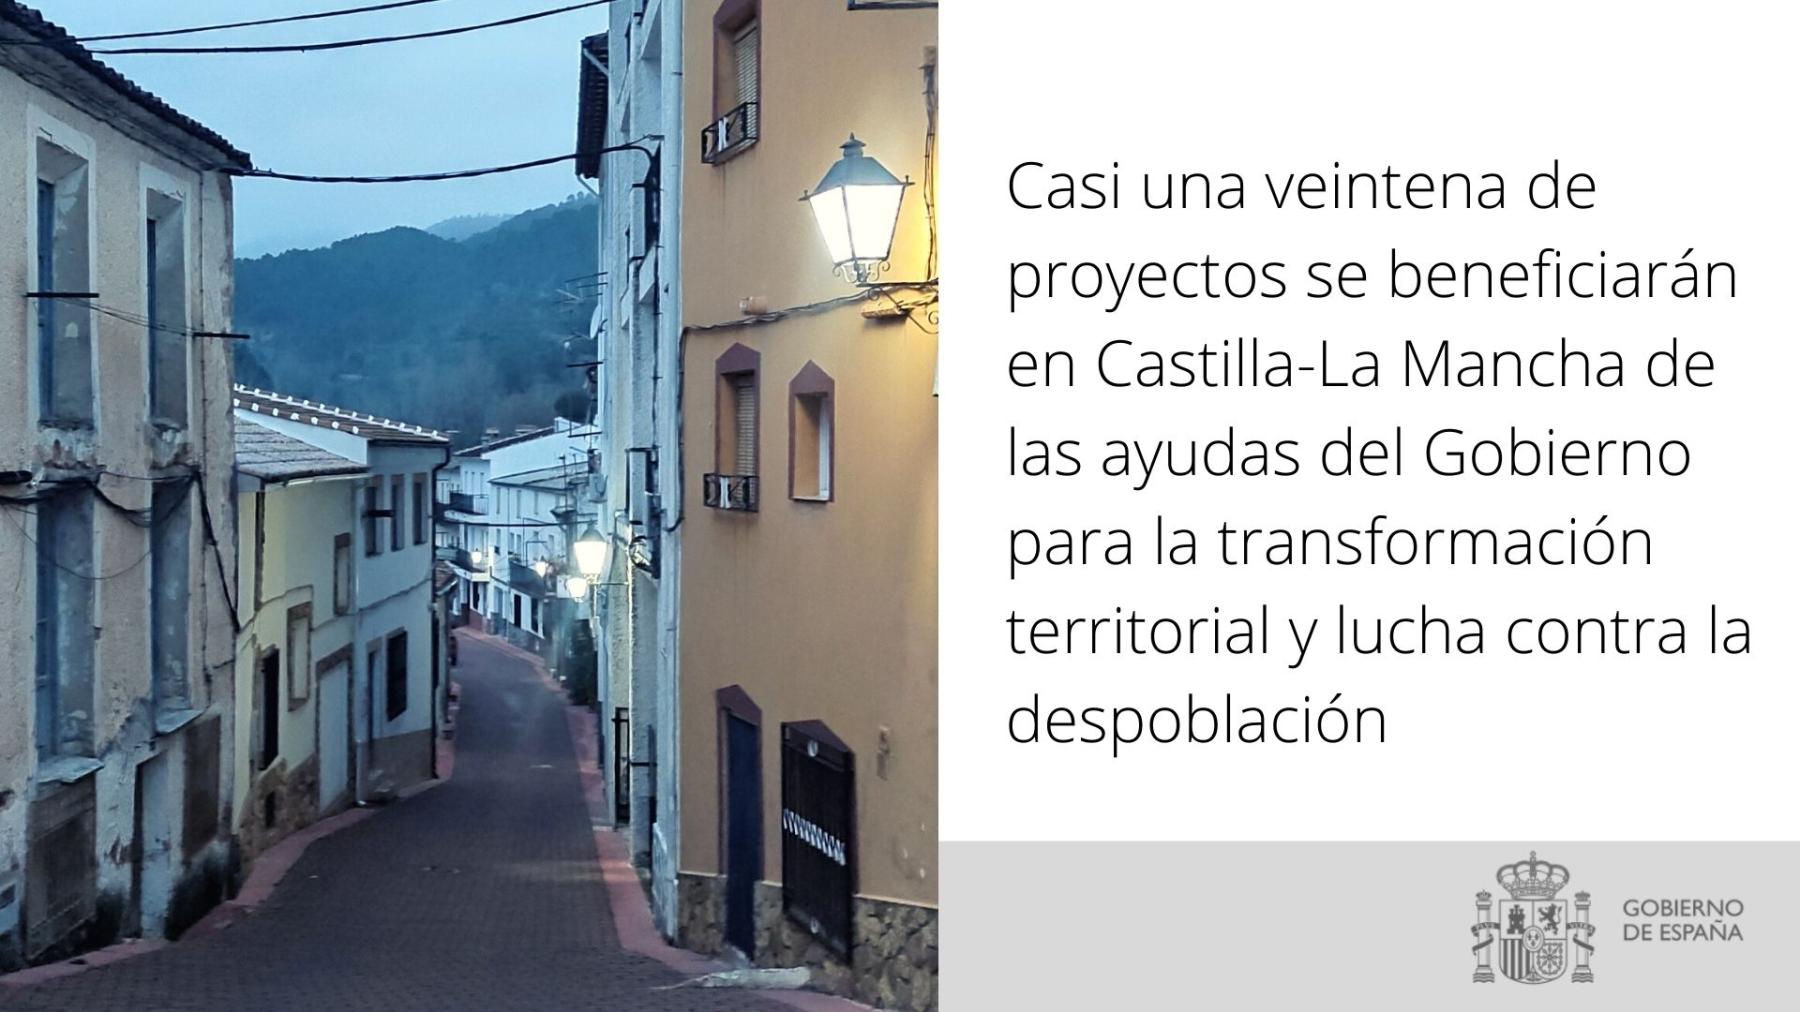 Casi una veintena de proyectos se beneficiarán en Castilla-La Mancha de las ayudas del Gobierno para la transformación territorial y lucha contra la despoblación